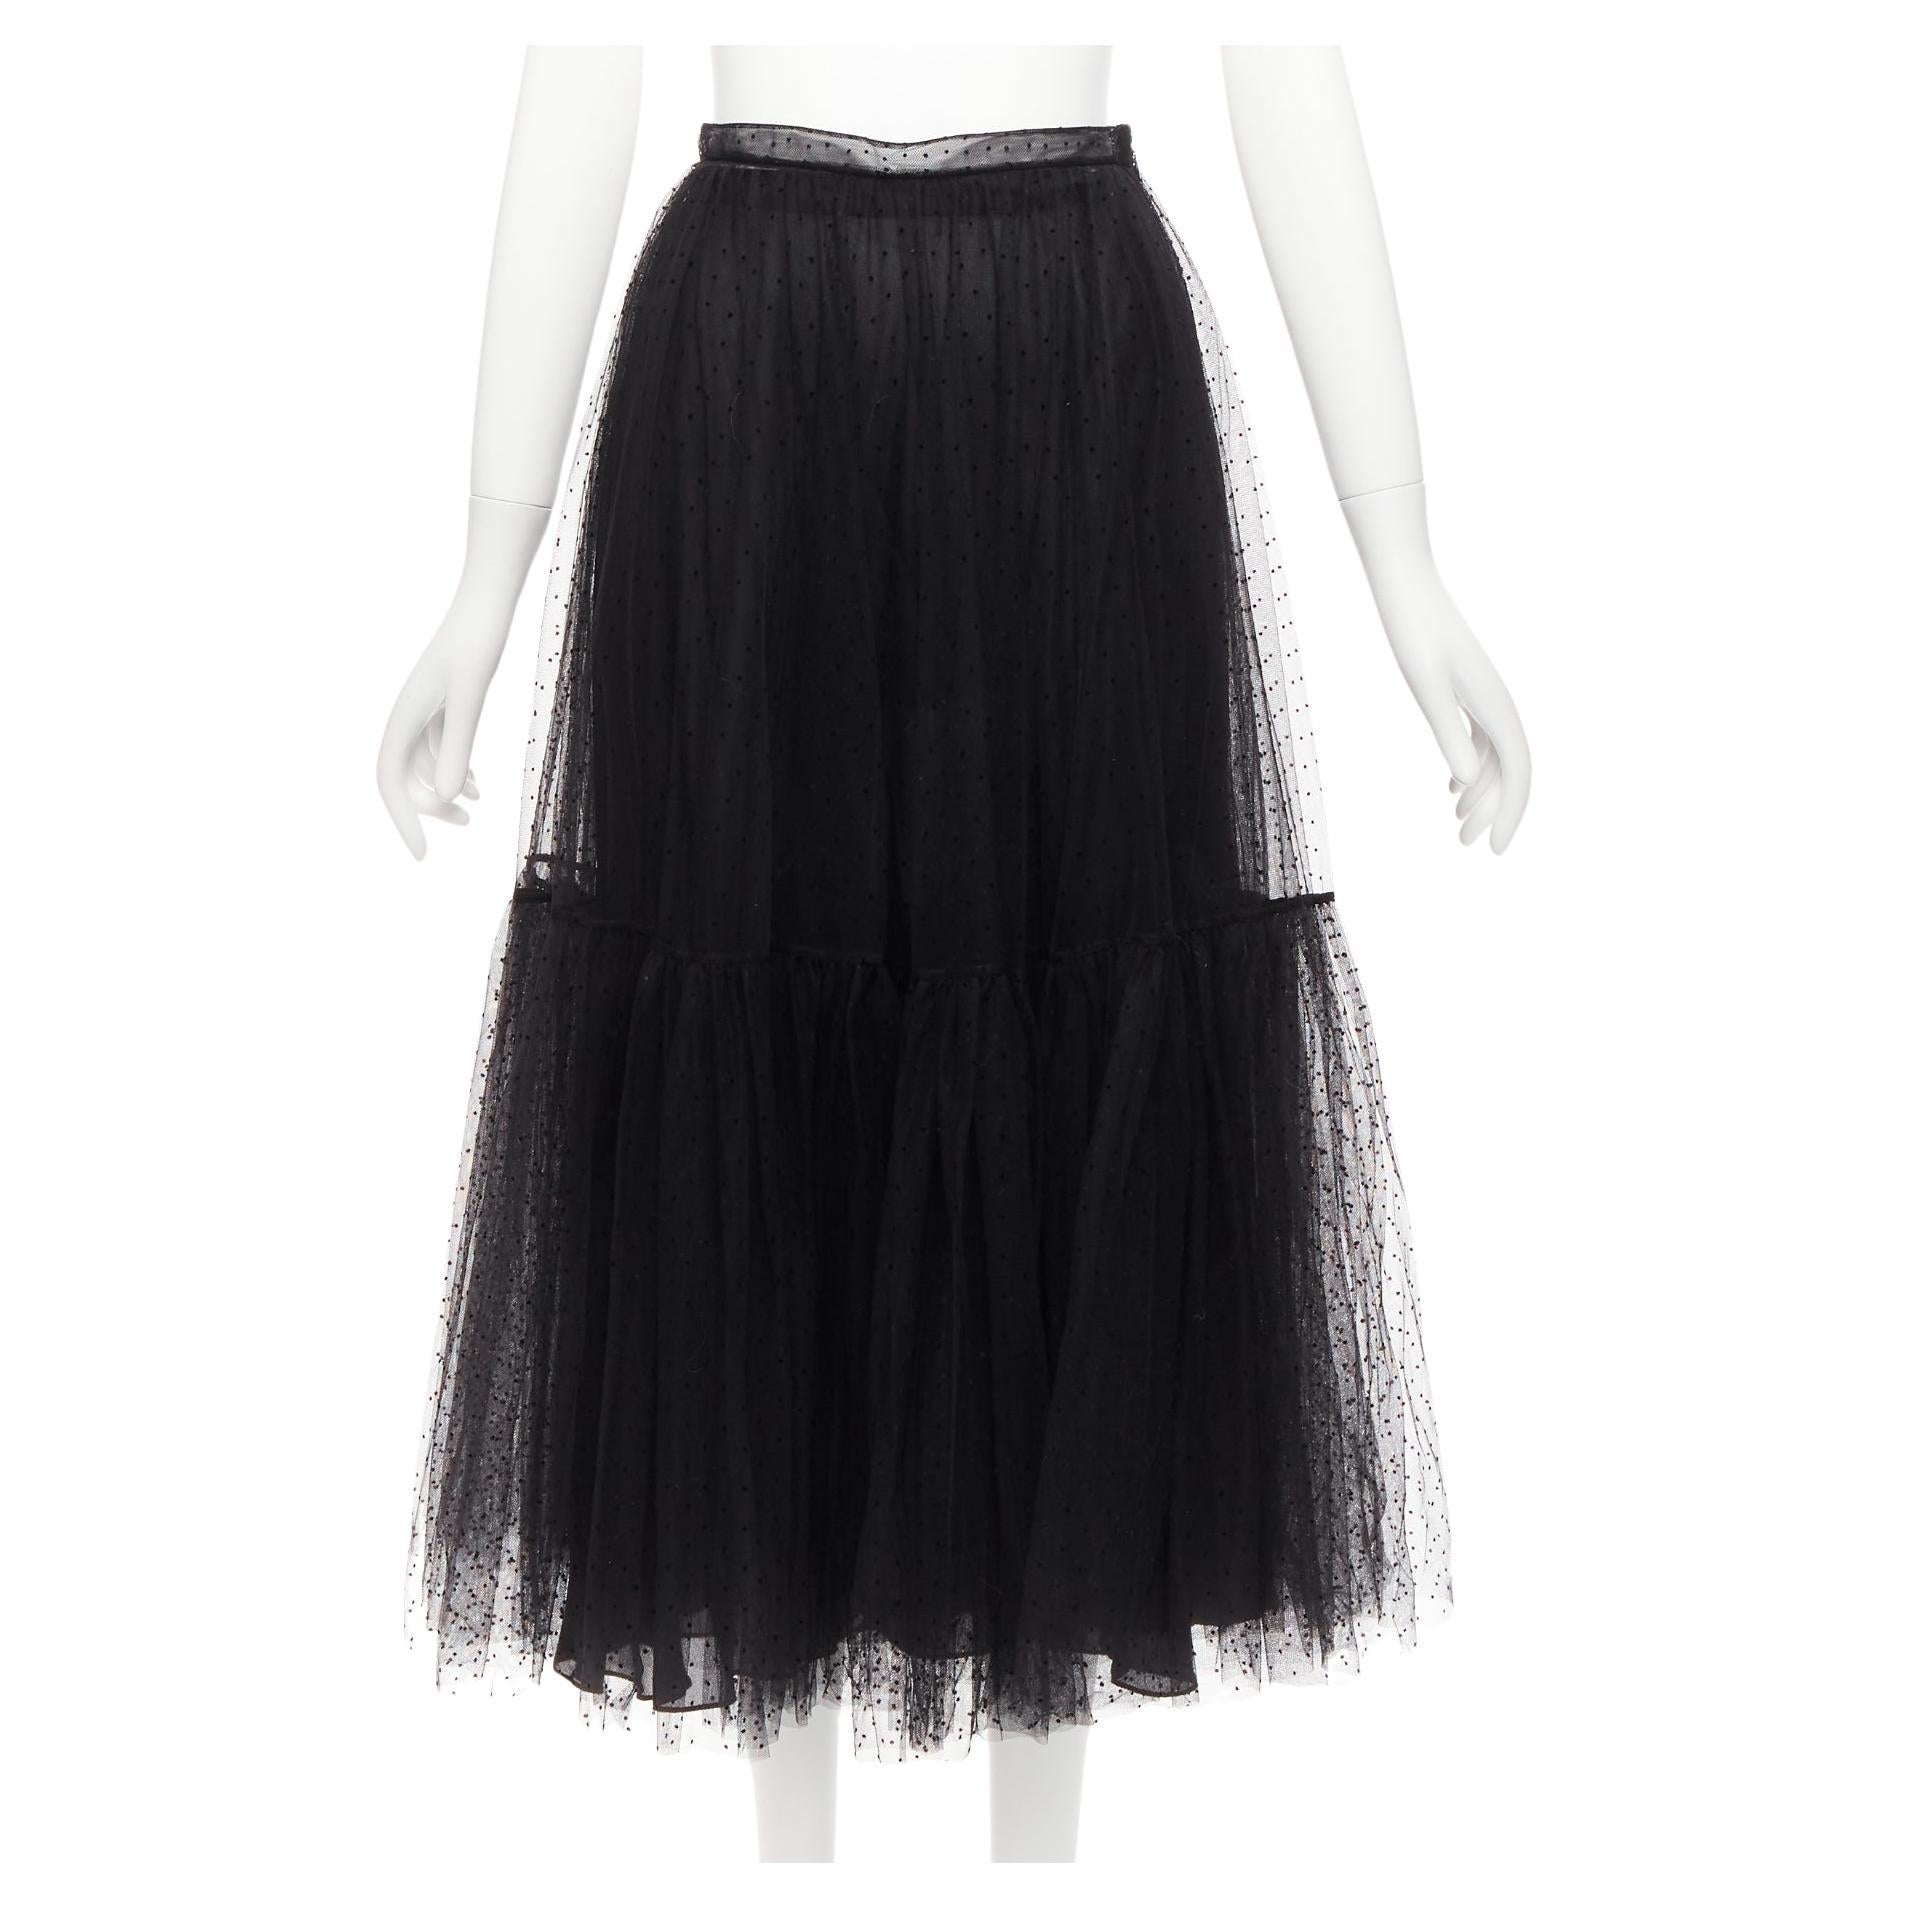 CHRISTIAN DIOR black sheer polka dot sheer tulle layered skirt S For Sale